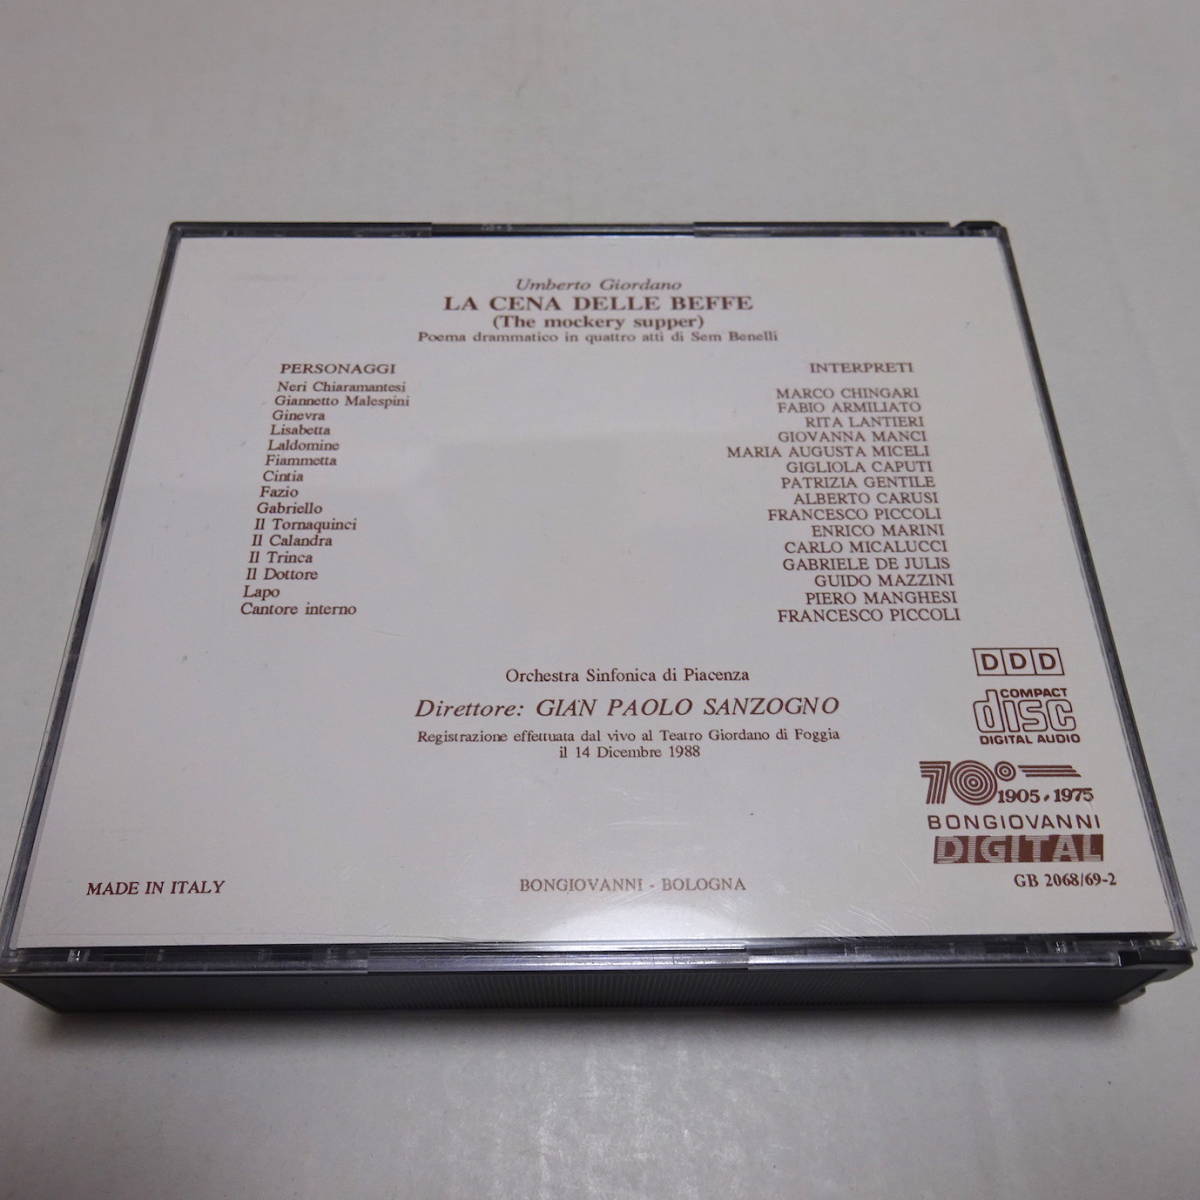 輸入盤/2CD「ジョルダーノ:おふざけの夕食(La cena delle beffe)」サンツォーニョ/ピアチェンツァ響/アルミリアート/ランティエーリ/1988年_画像2